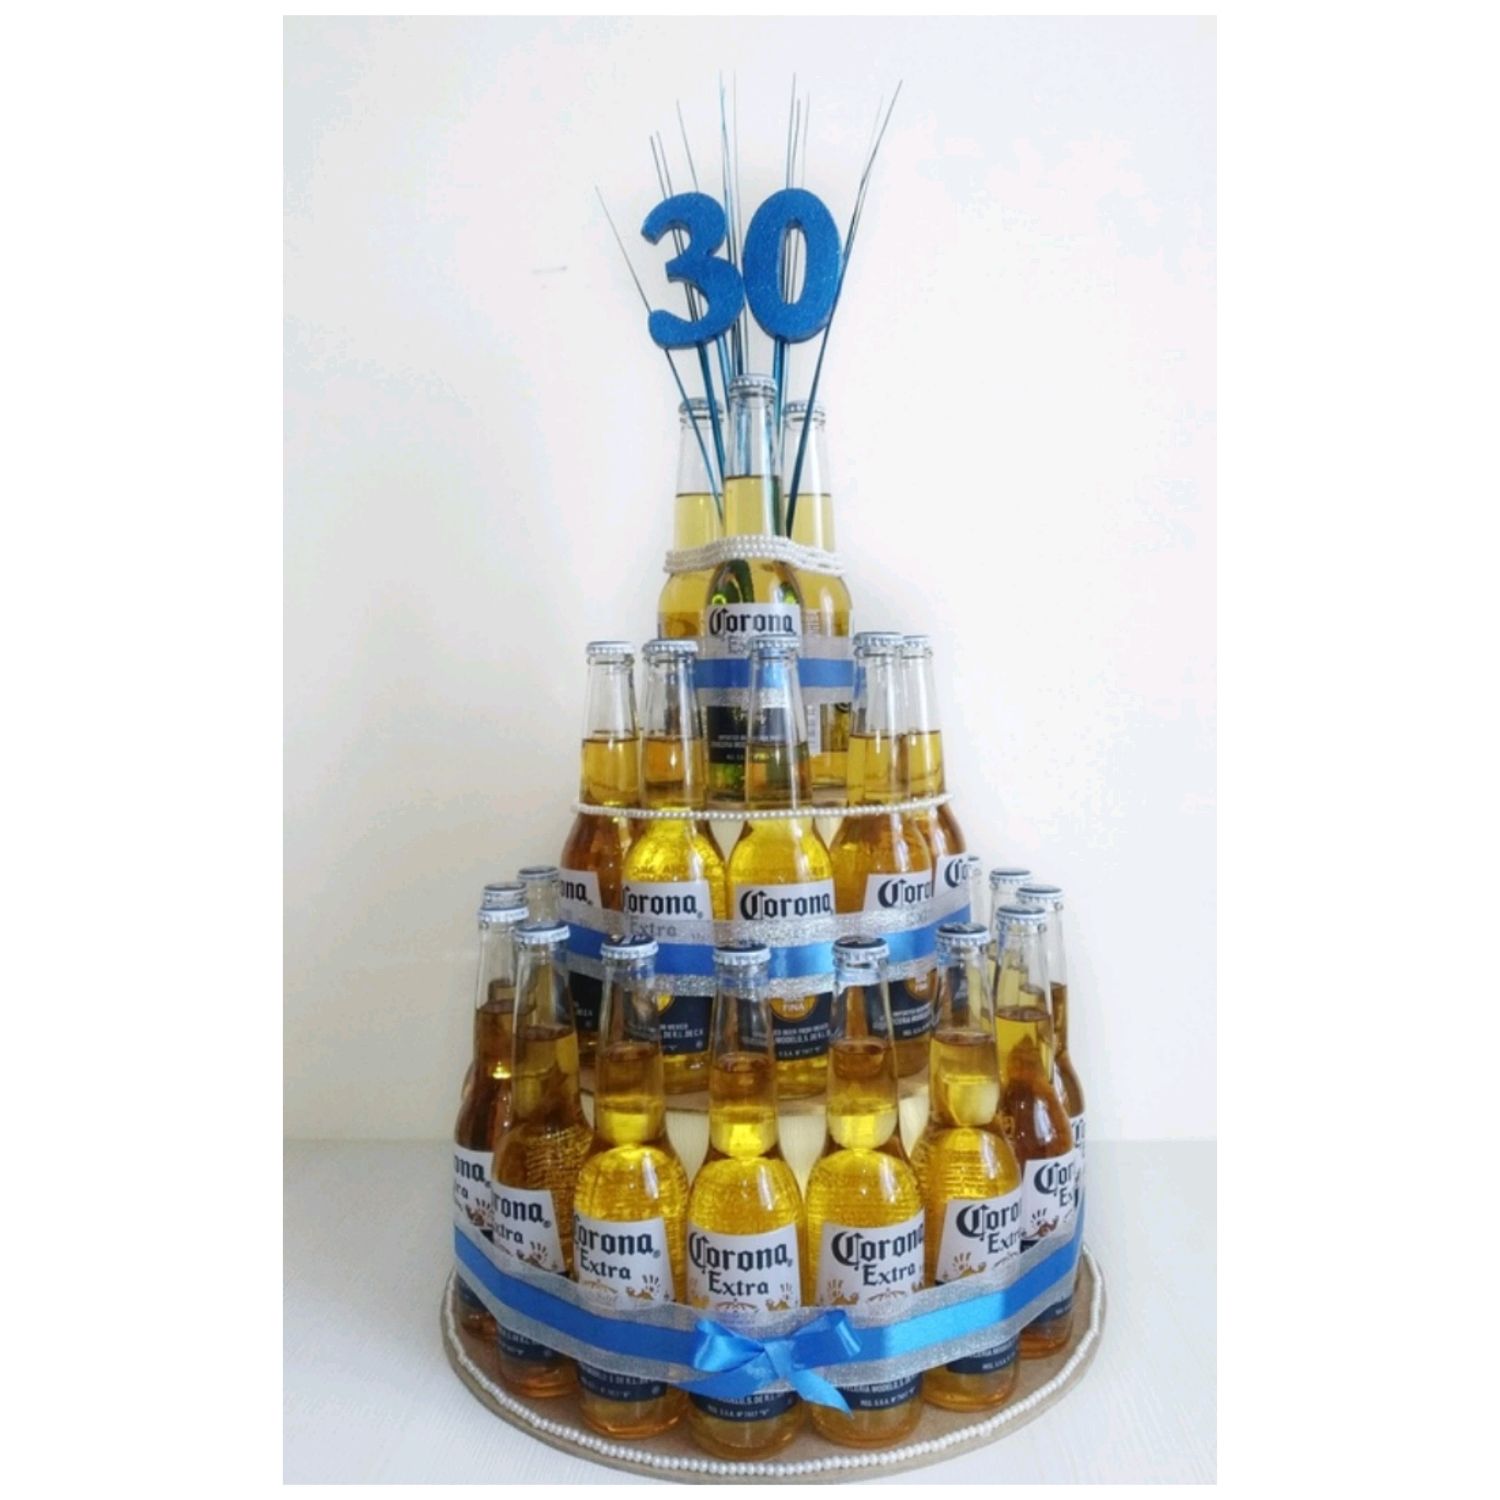 Надежный пивная бутылка торт ко дню рождения для развлечения и развлечений - баштрен.рф